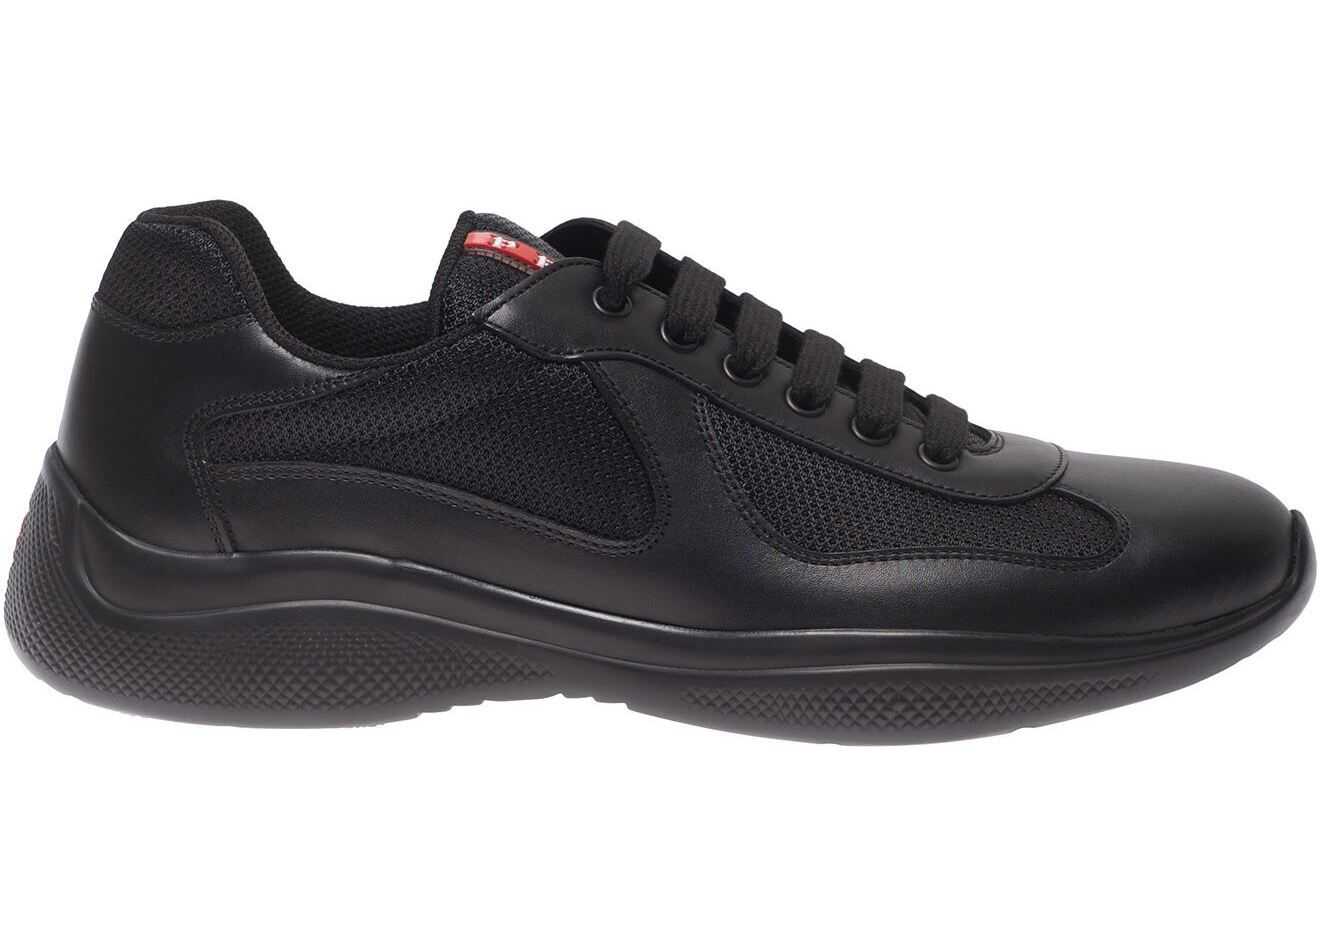 Prada Sport America\'s Cup Sneakers In Black 4E3400 6GW F0002 Black